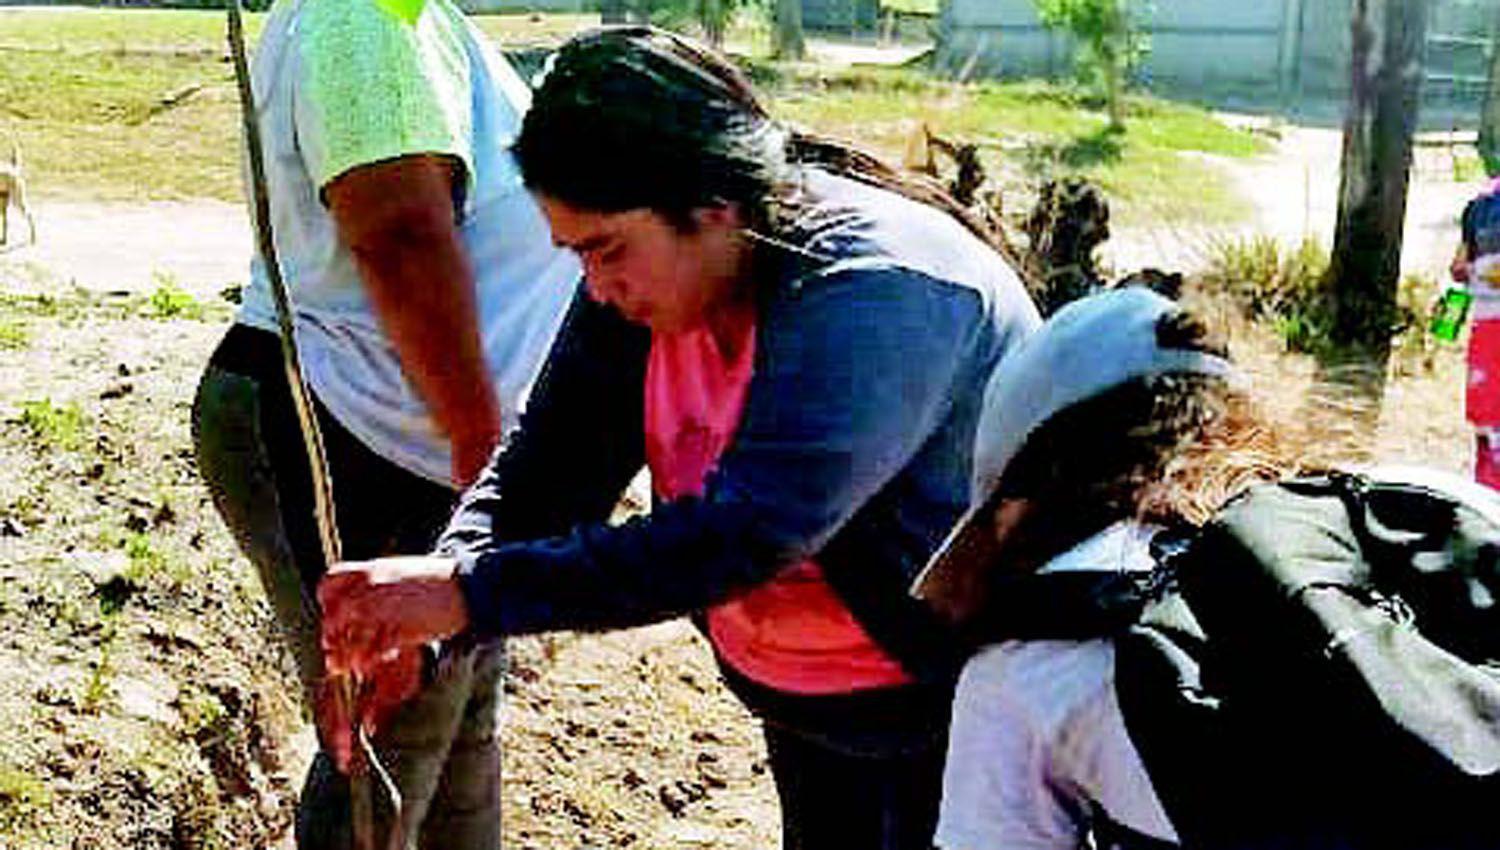 Vecinos plantan aacuterboles para mejorar el barrio Riacuteo Dulce